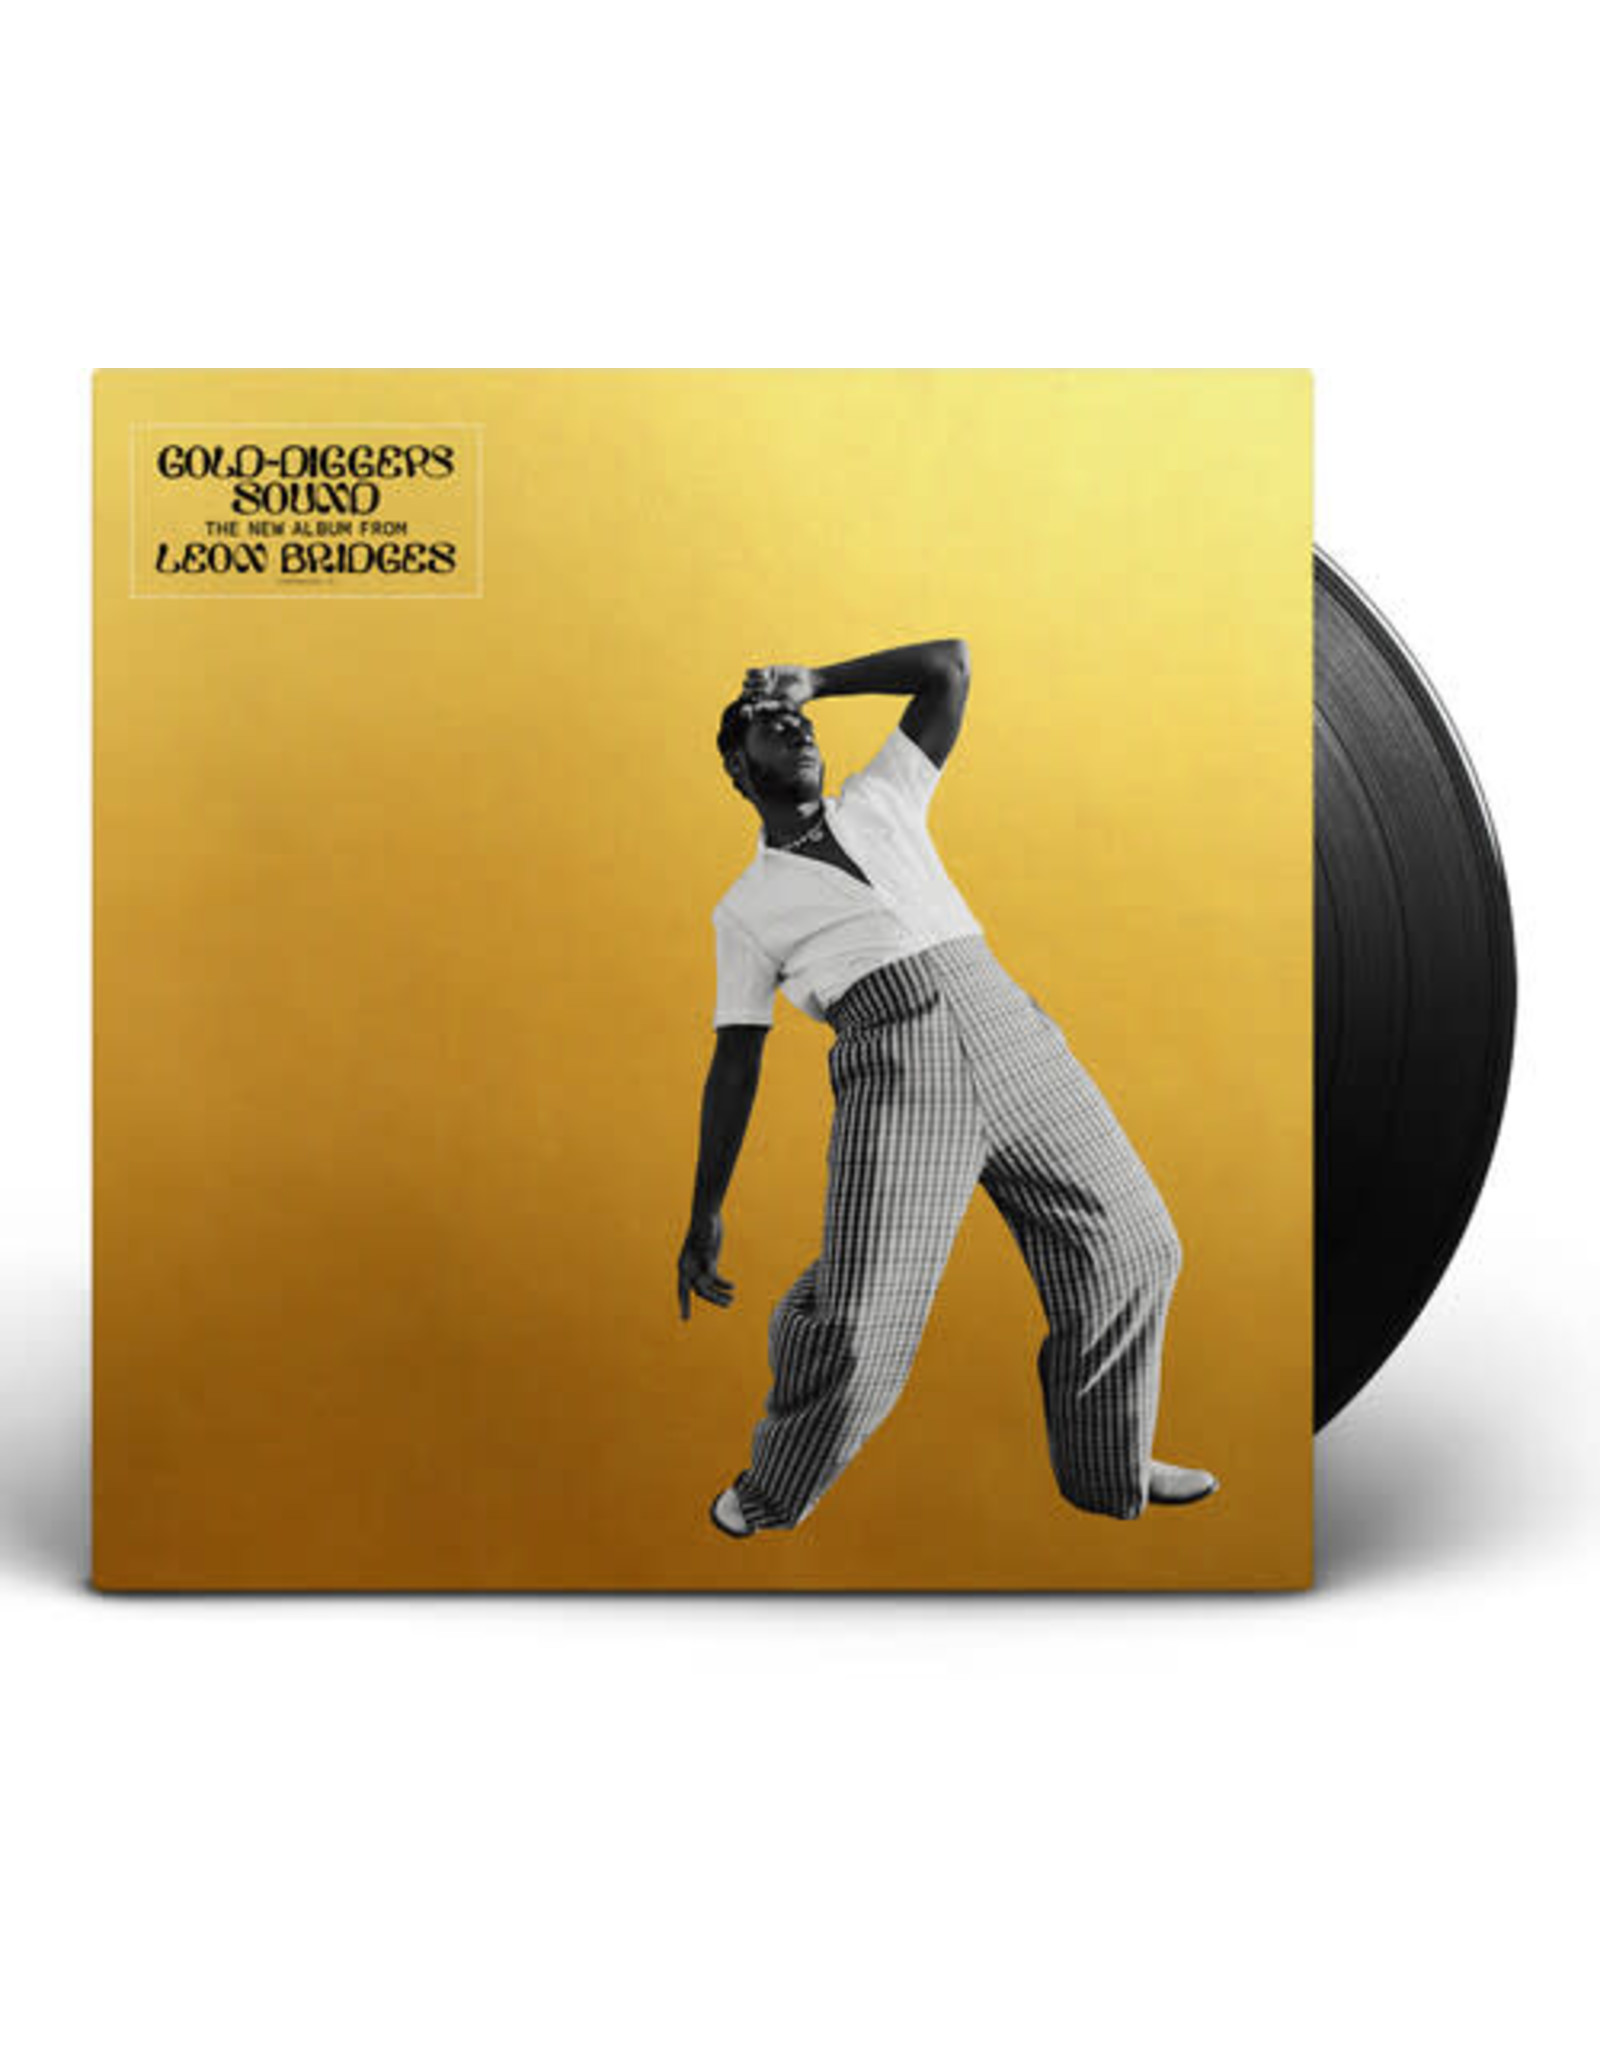 New Vinyl Leon Bridges - Gold-Diggers Sound LP